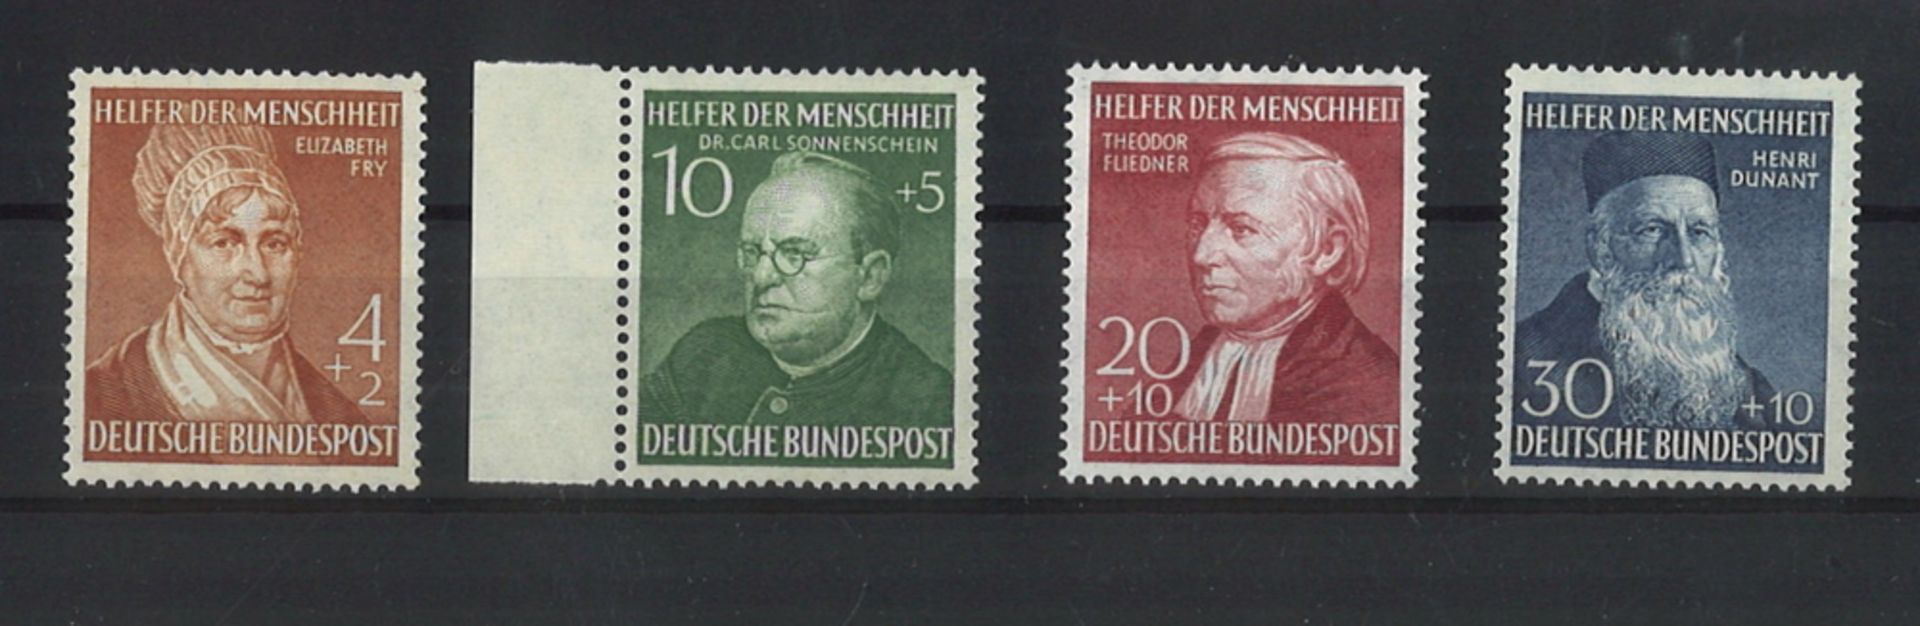 BRD 1952. MiNr. 156-159, postfrisch